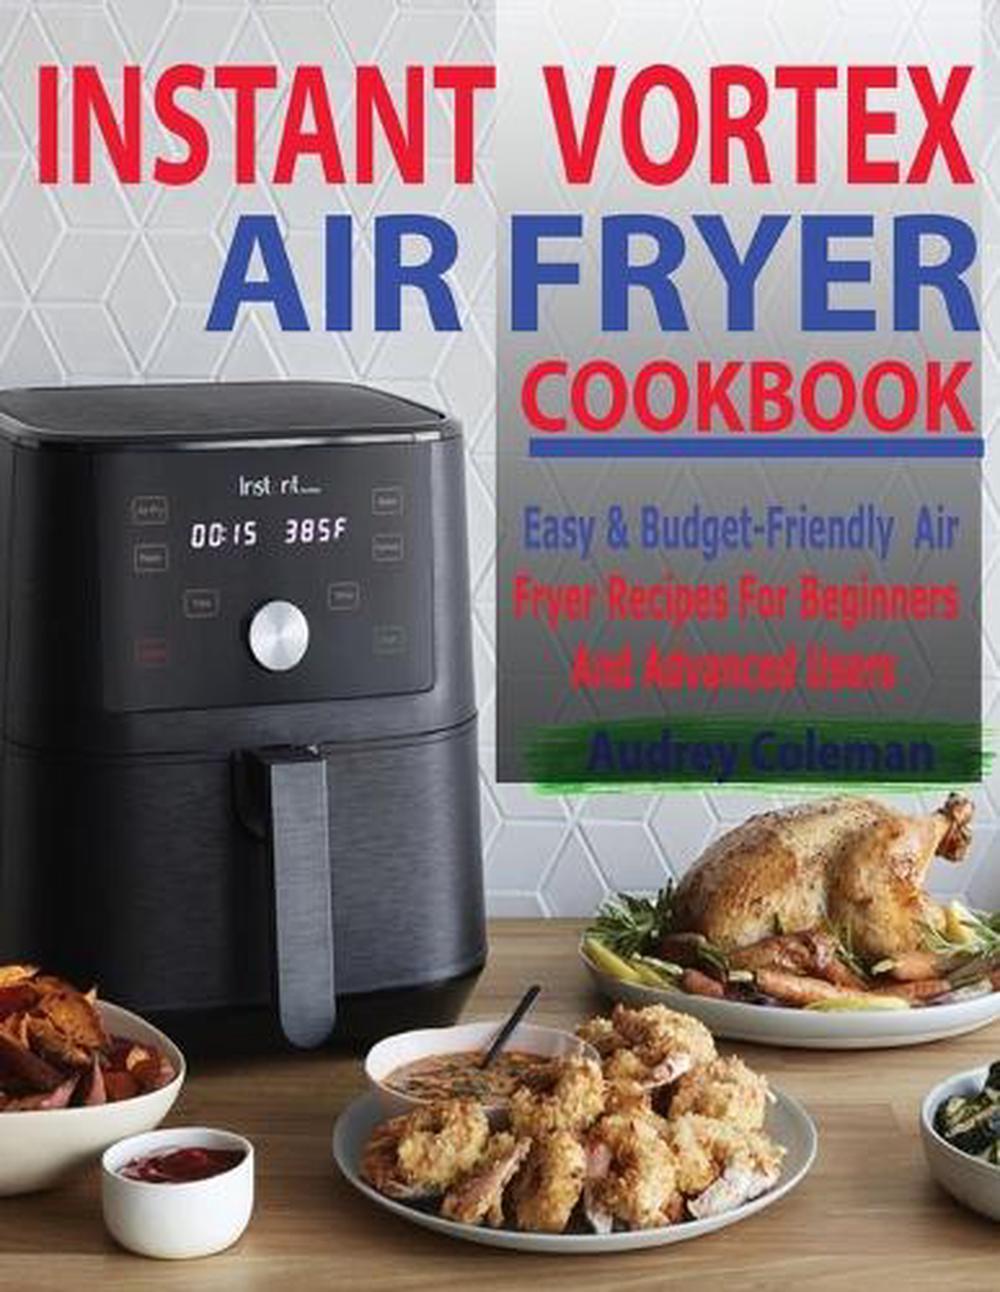 Instant Vortex Air Fryer Cookbook 550 Easy & BudgetFriendly Air Fryer